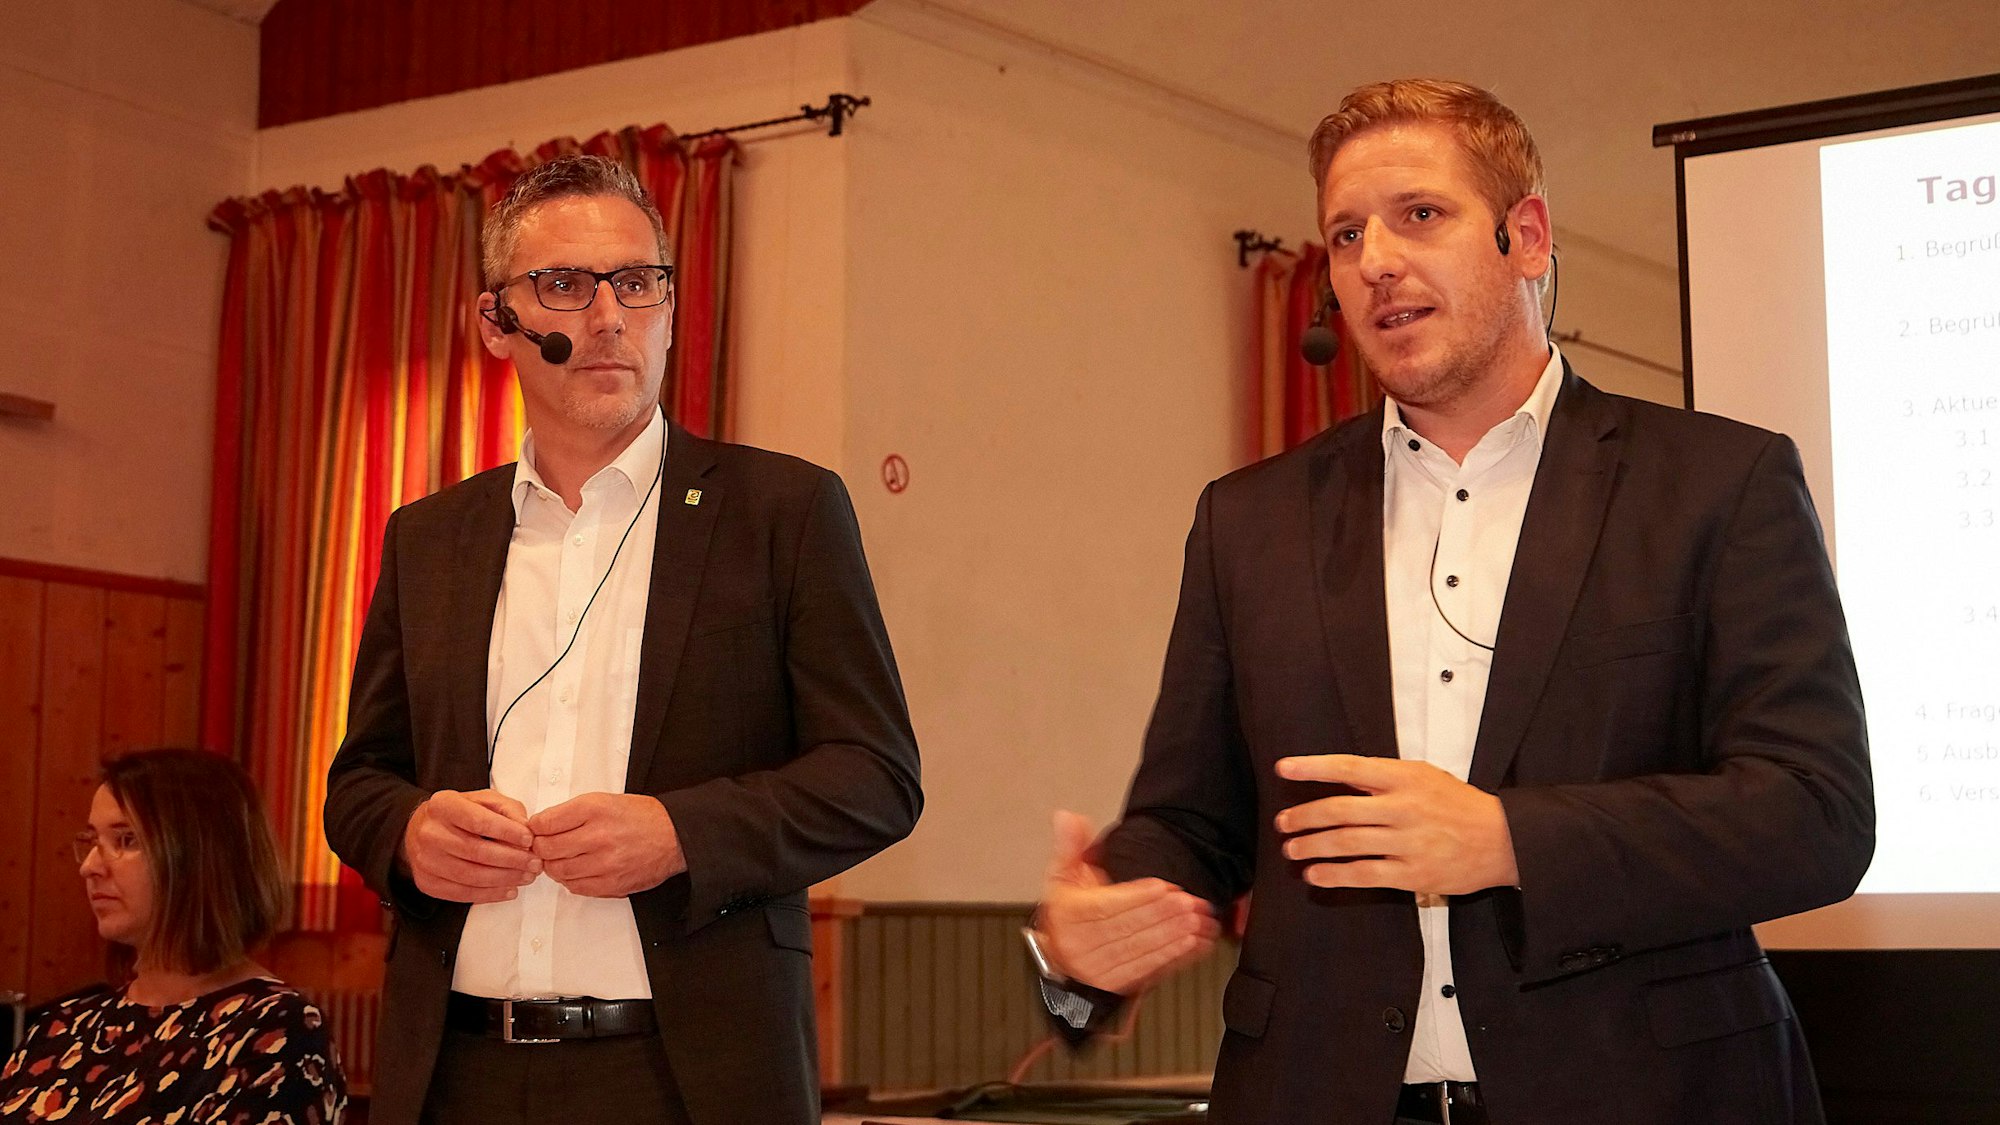 Bürgermeister Norbert Crump (l.) und Landrat Markus Ramers sprechen bei einer Bürgerversammlung. Beide tragen Mikrofone mit Headsets.